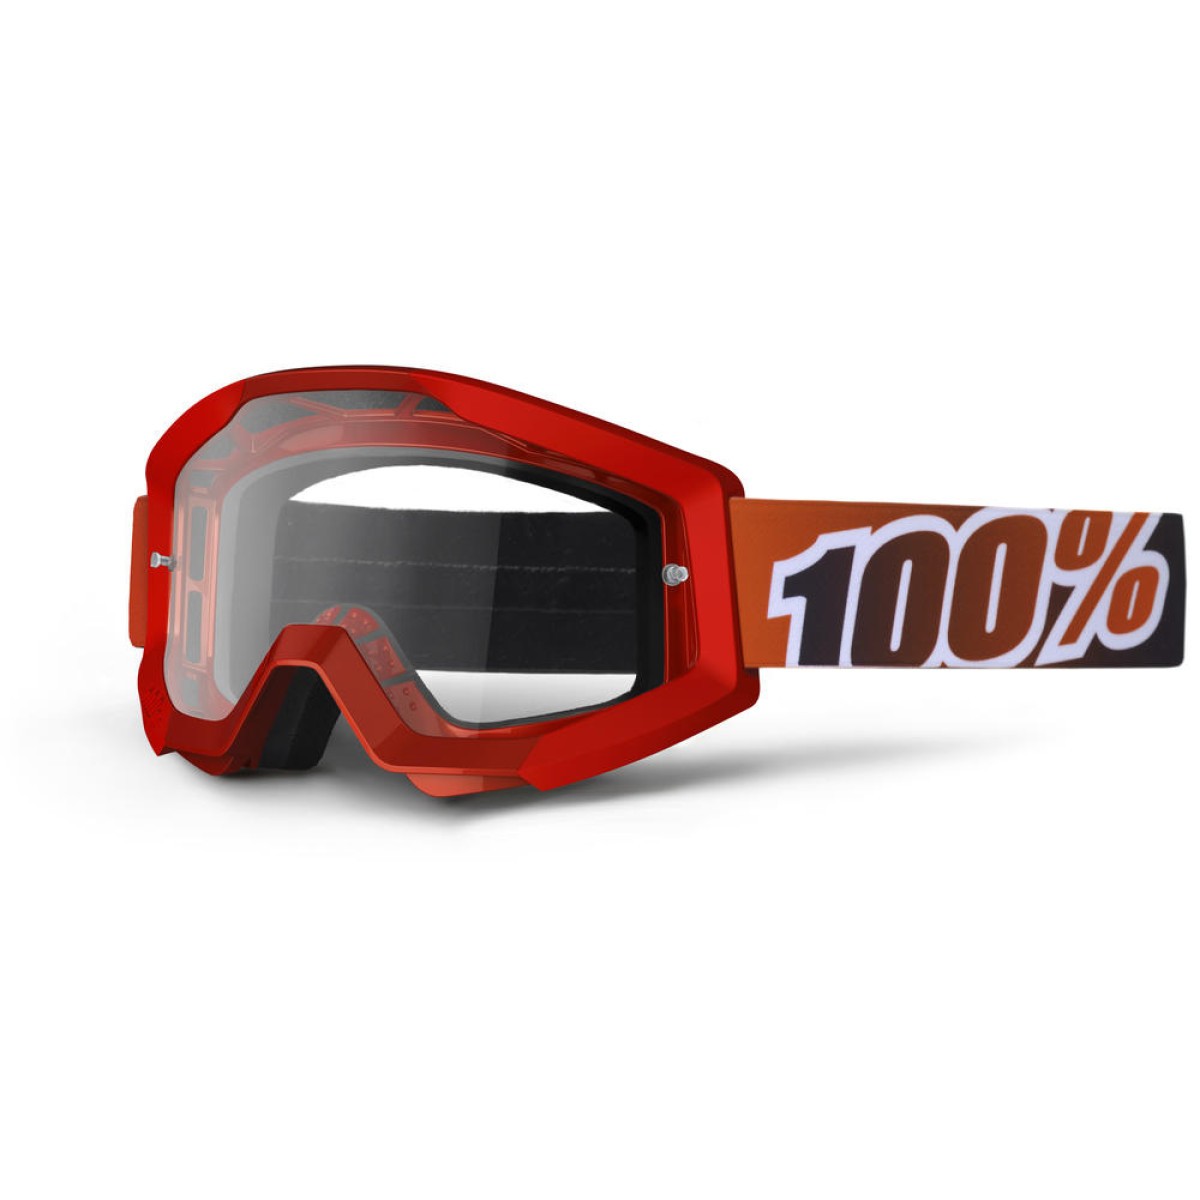 Glasögon 100% Strata Fire Red junior